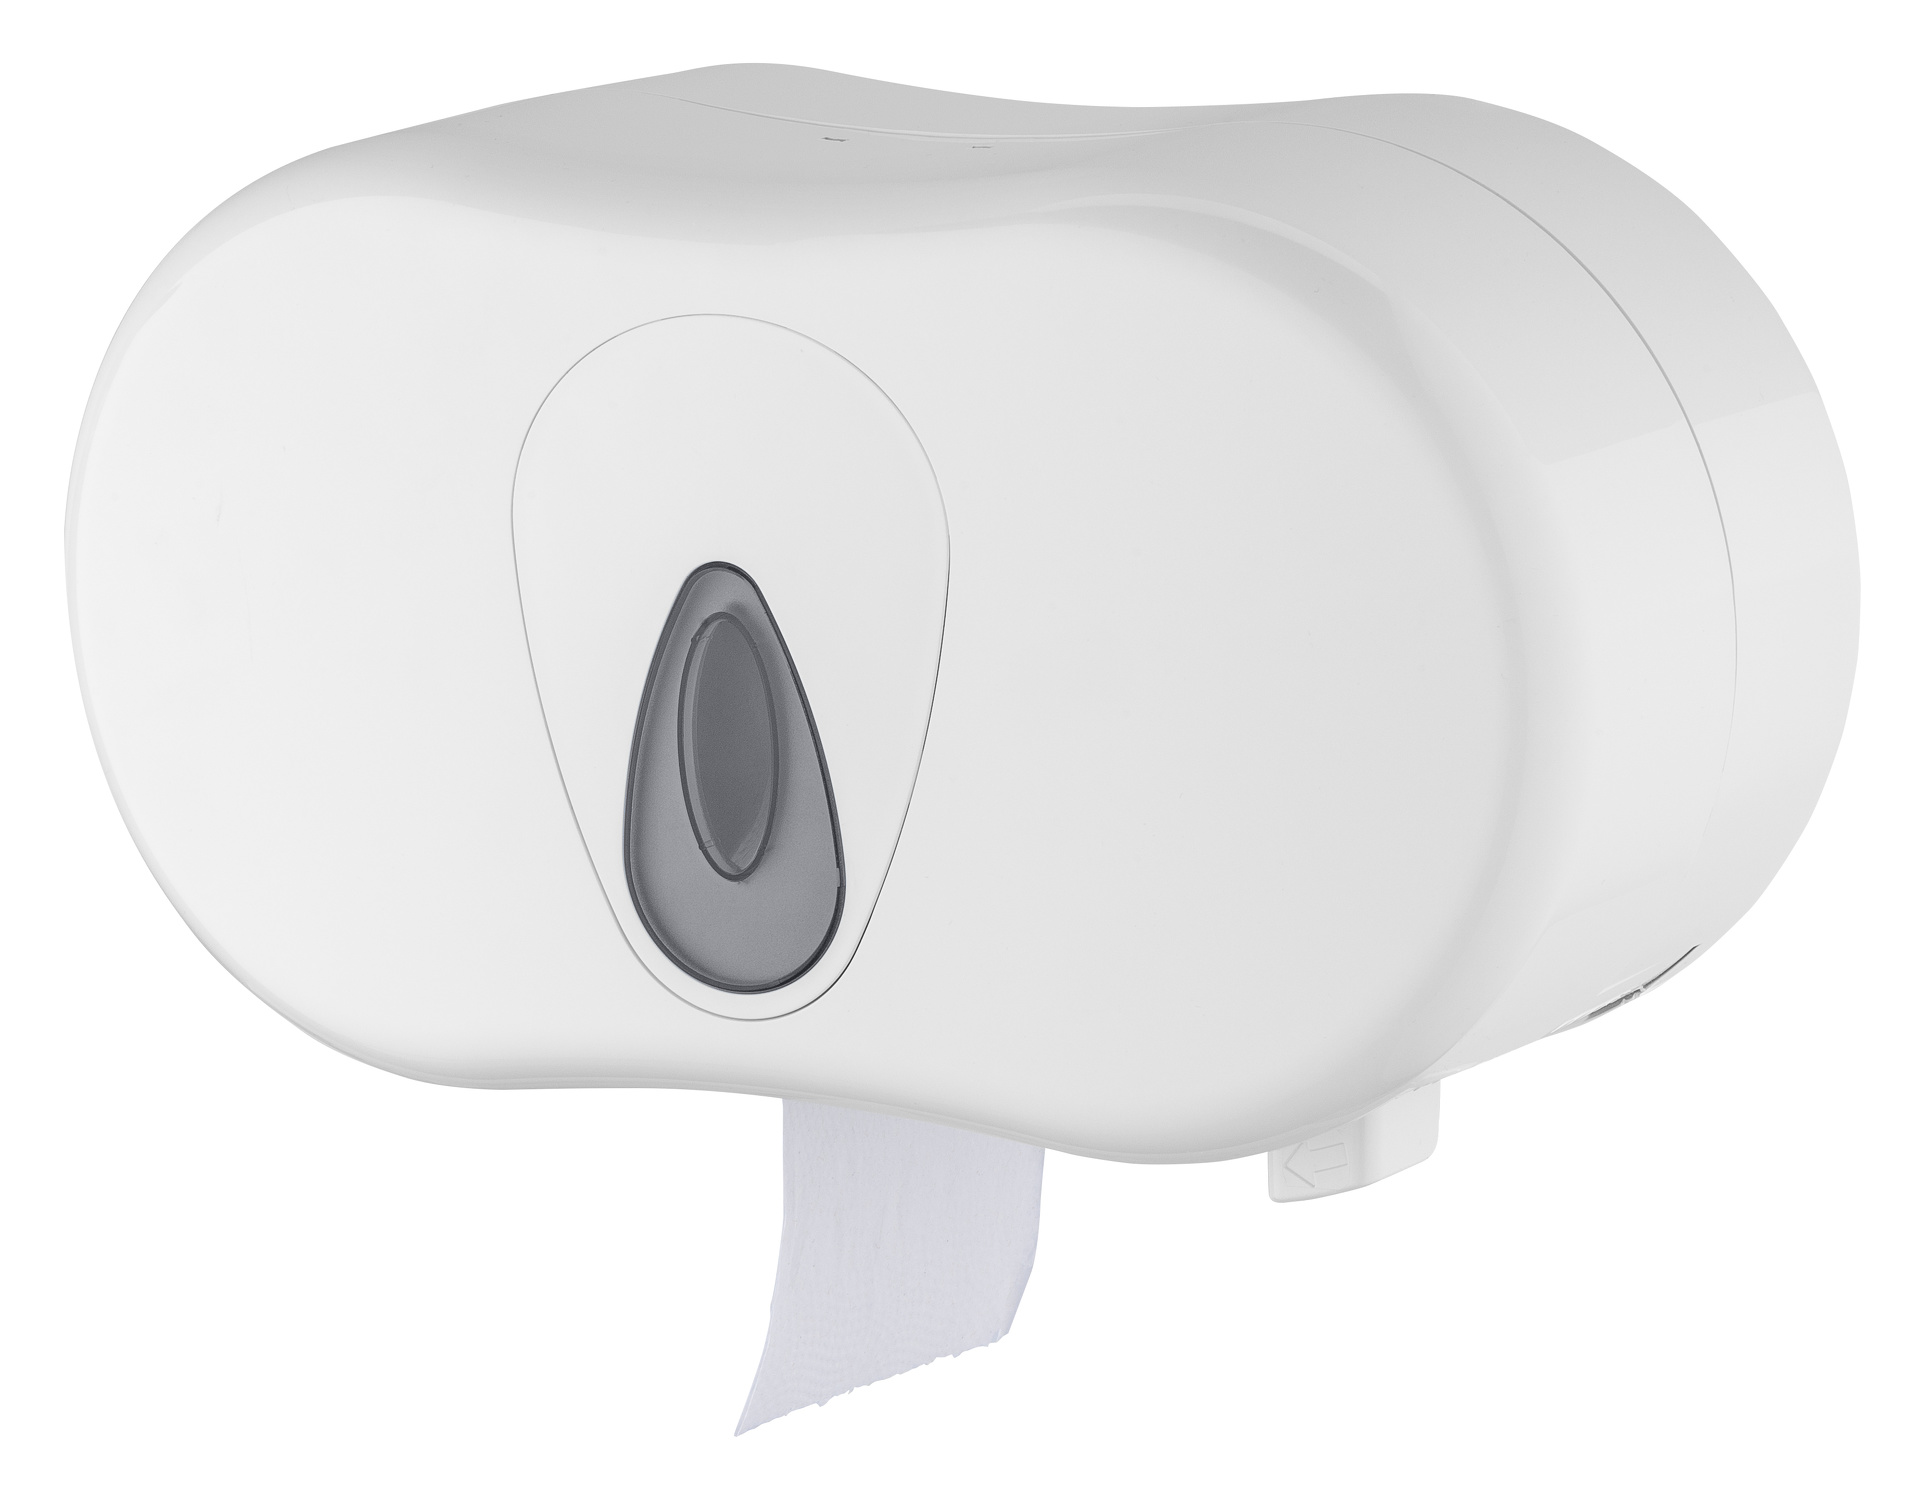 Toilettenpapierspender, Kunststoff, für 2 Rollen, weiß, 19 x 34 x 15 cm